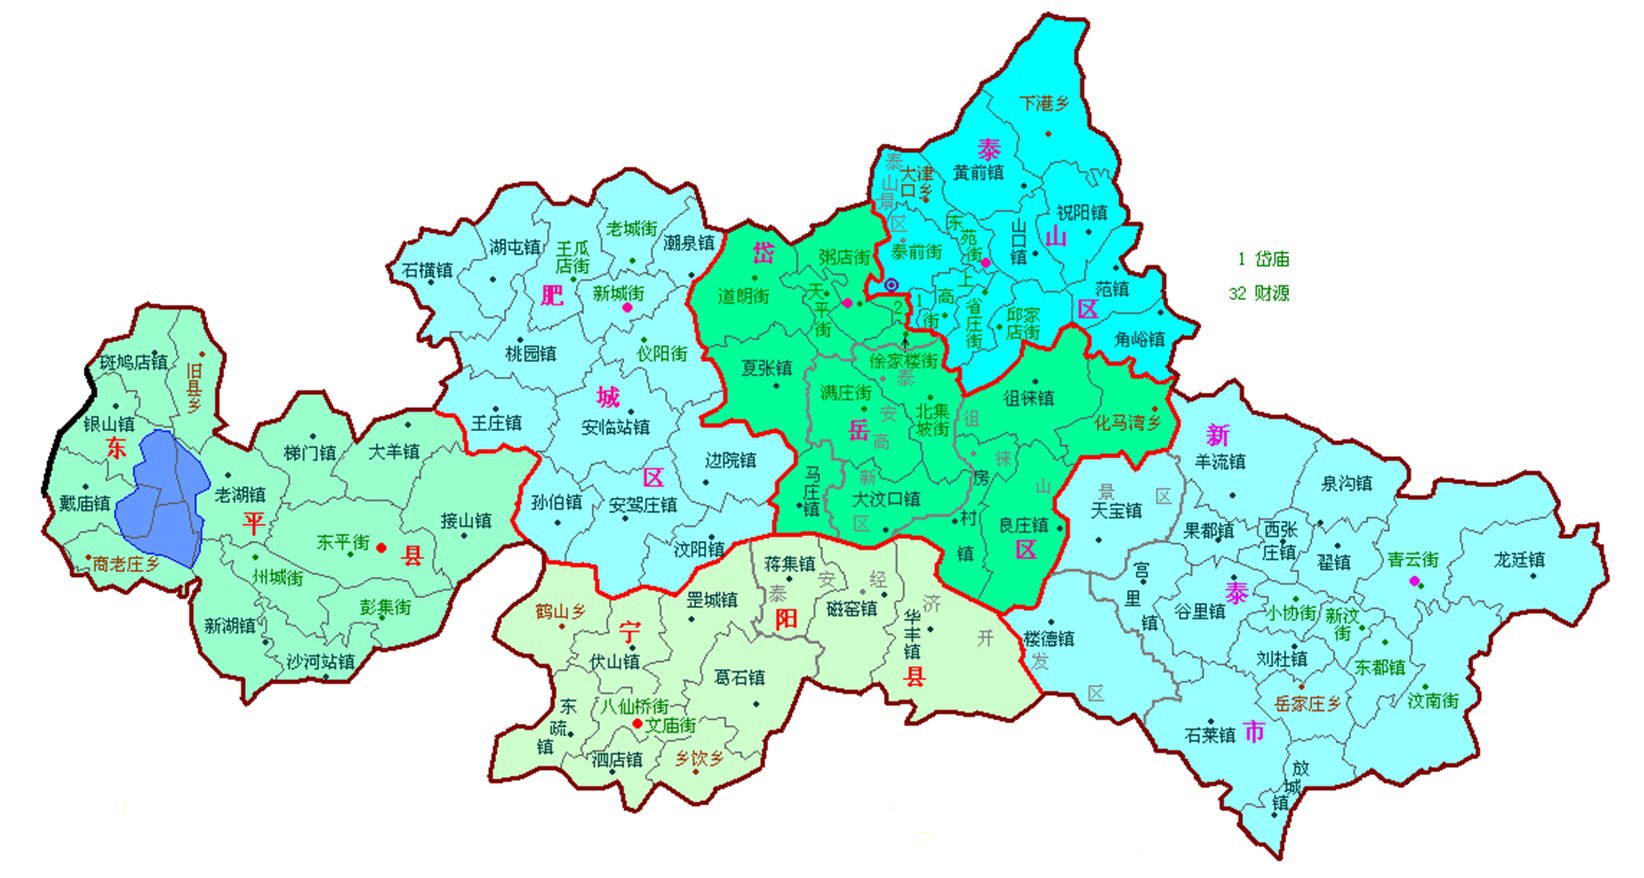 山东省东平县位置 山东省东平县的地理位置在哪里